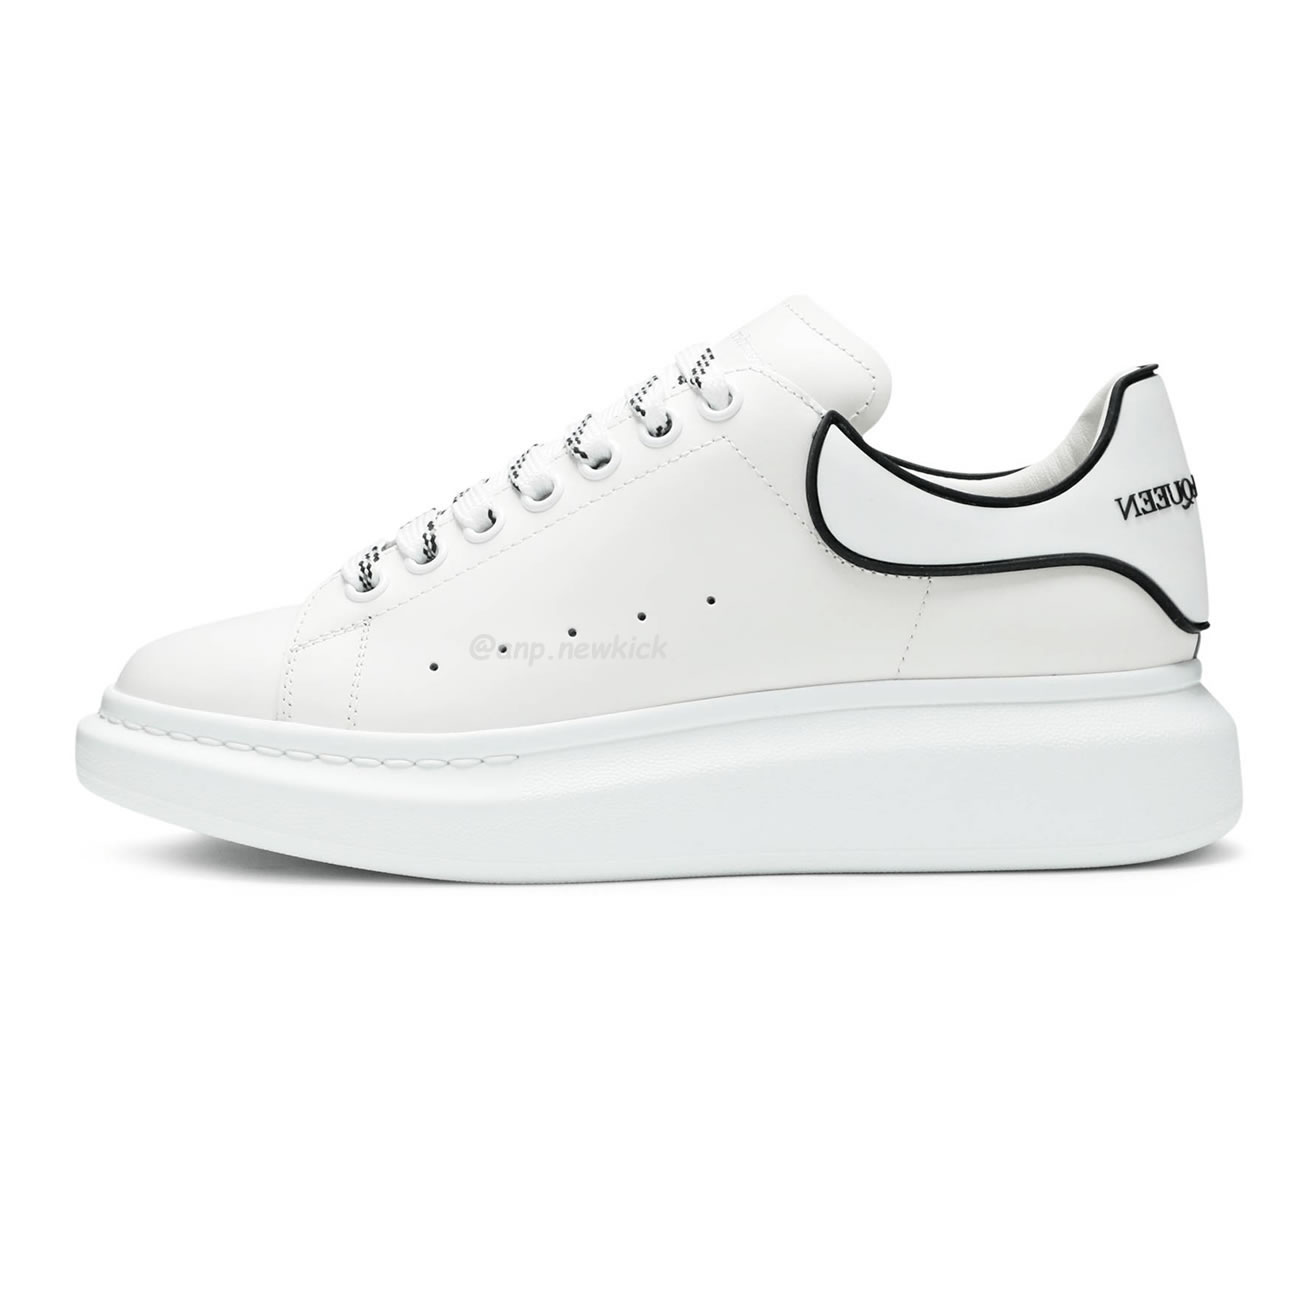 Alexander Mcqueen Oversized Sneaker White Black 625156 Whxmt 9074 (1) - newkick.org